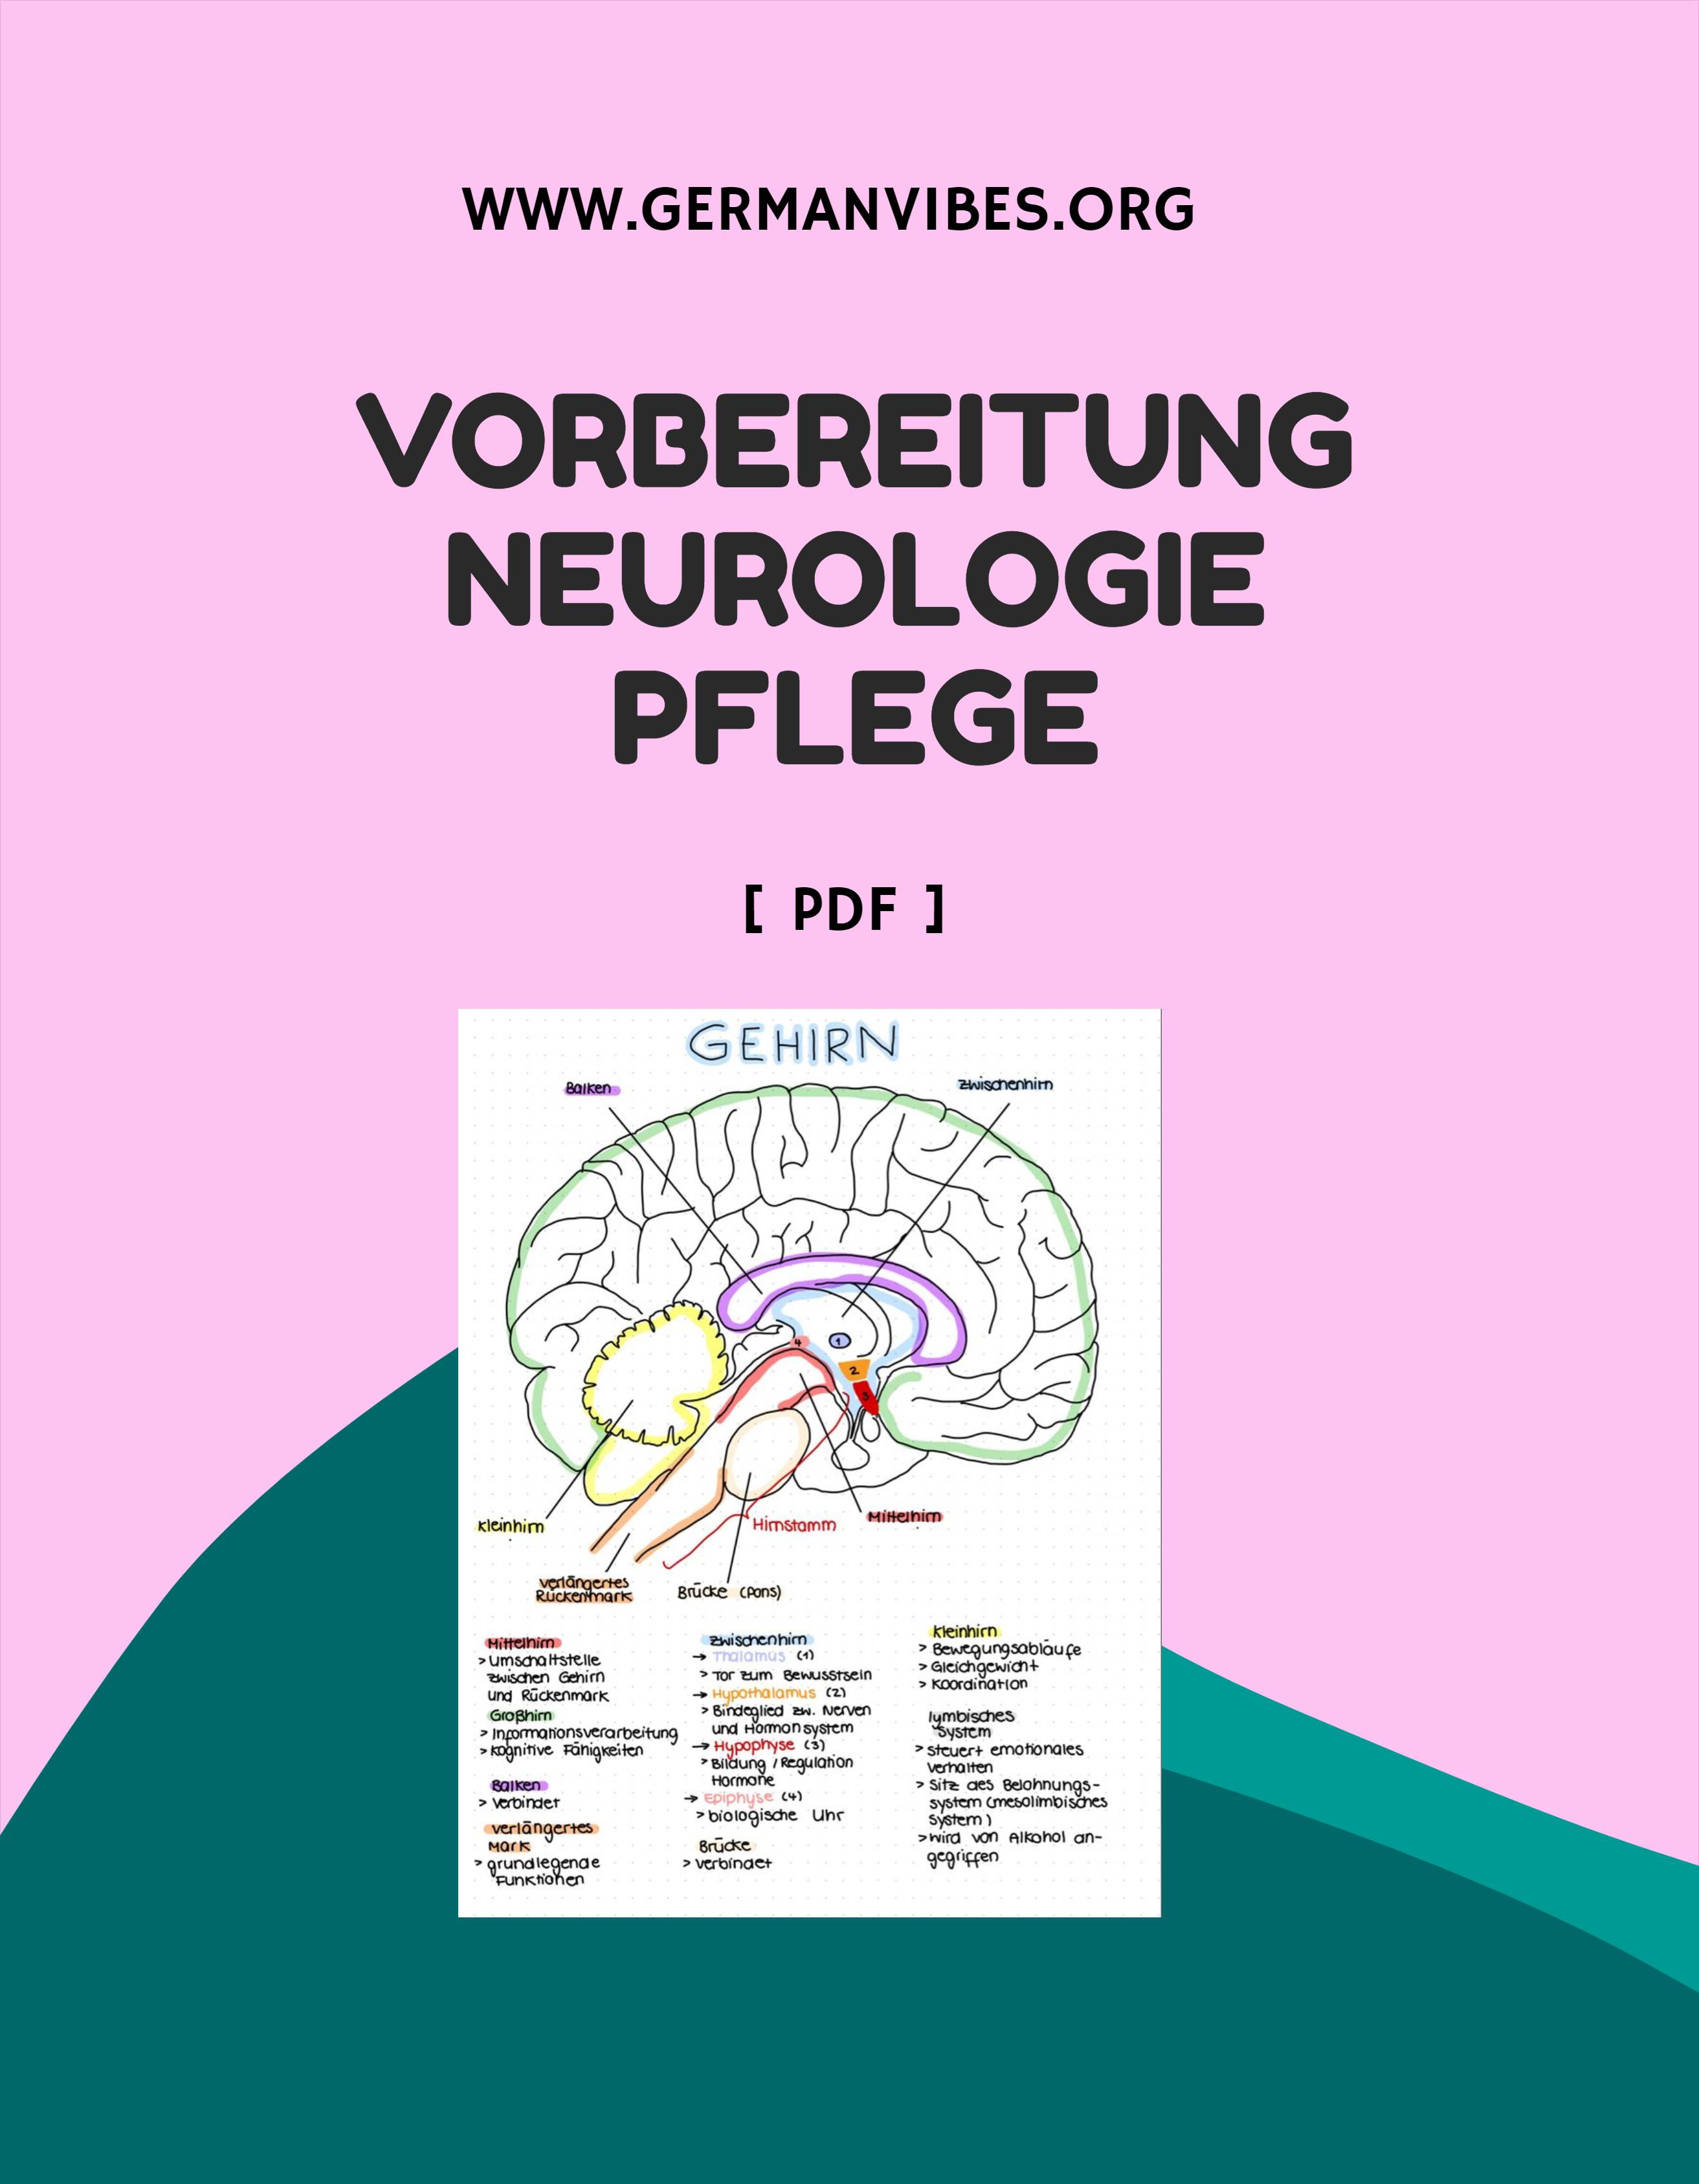 Neurologie Pflege mündliche prüfung Vorbereitung